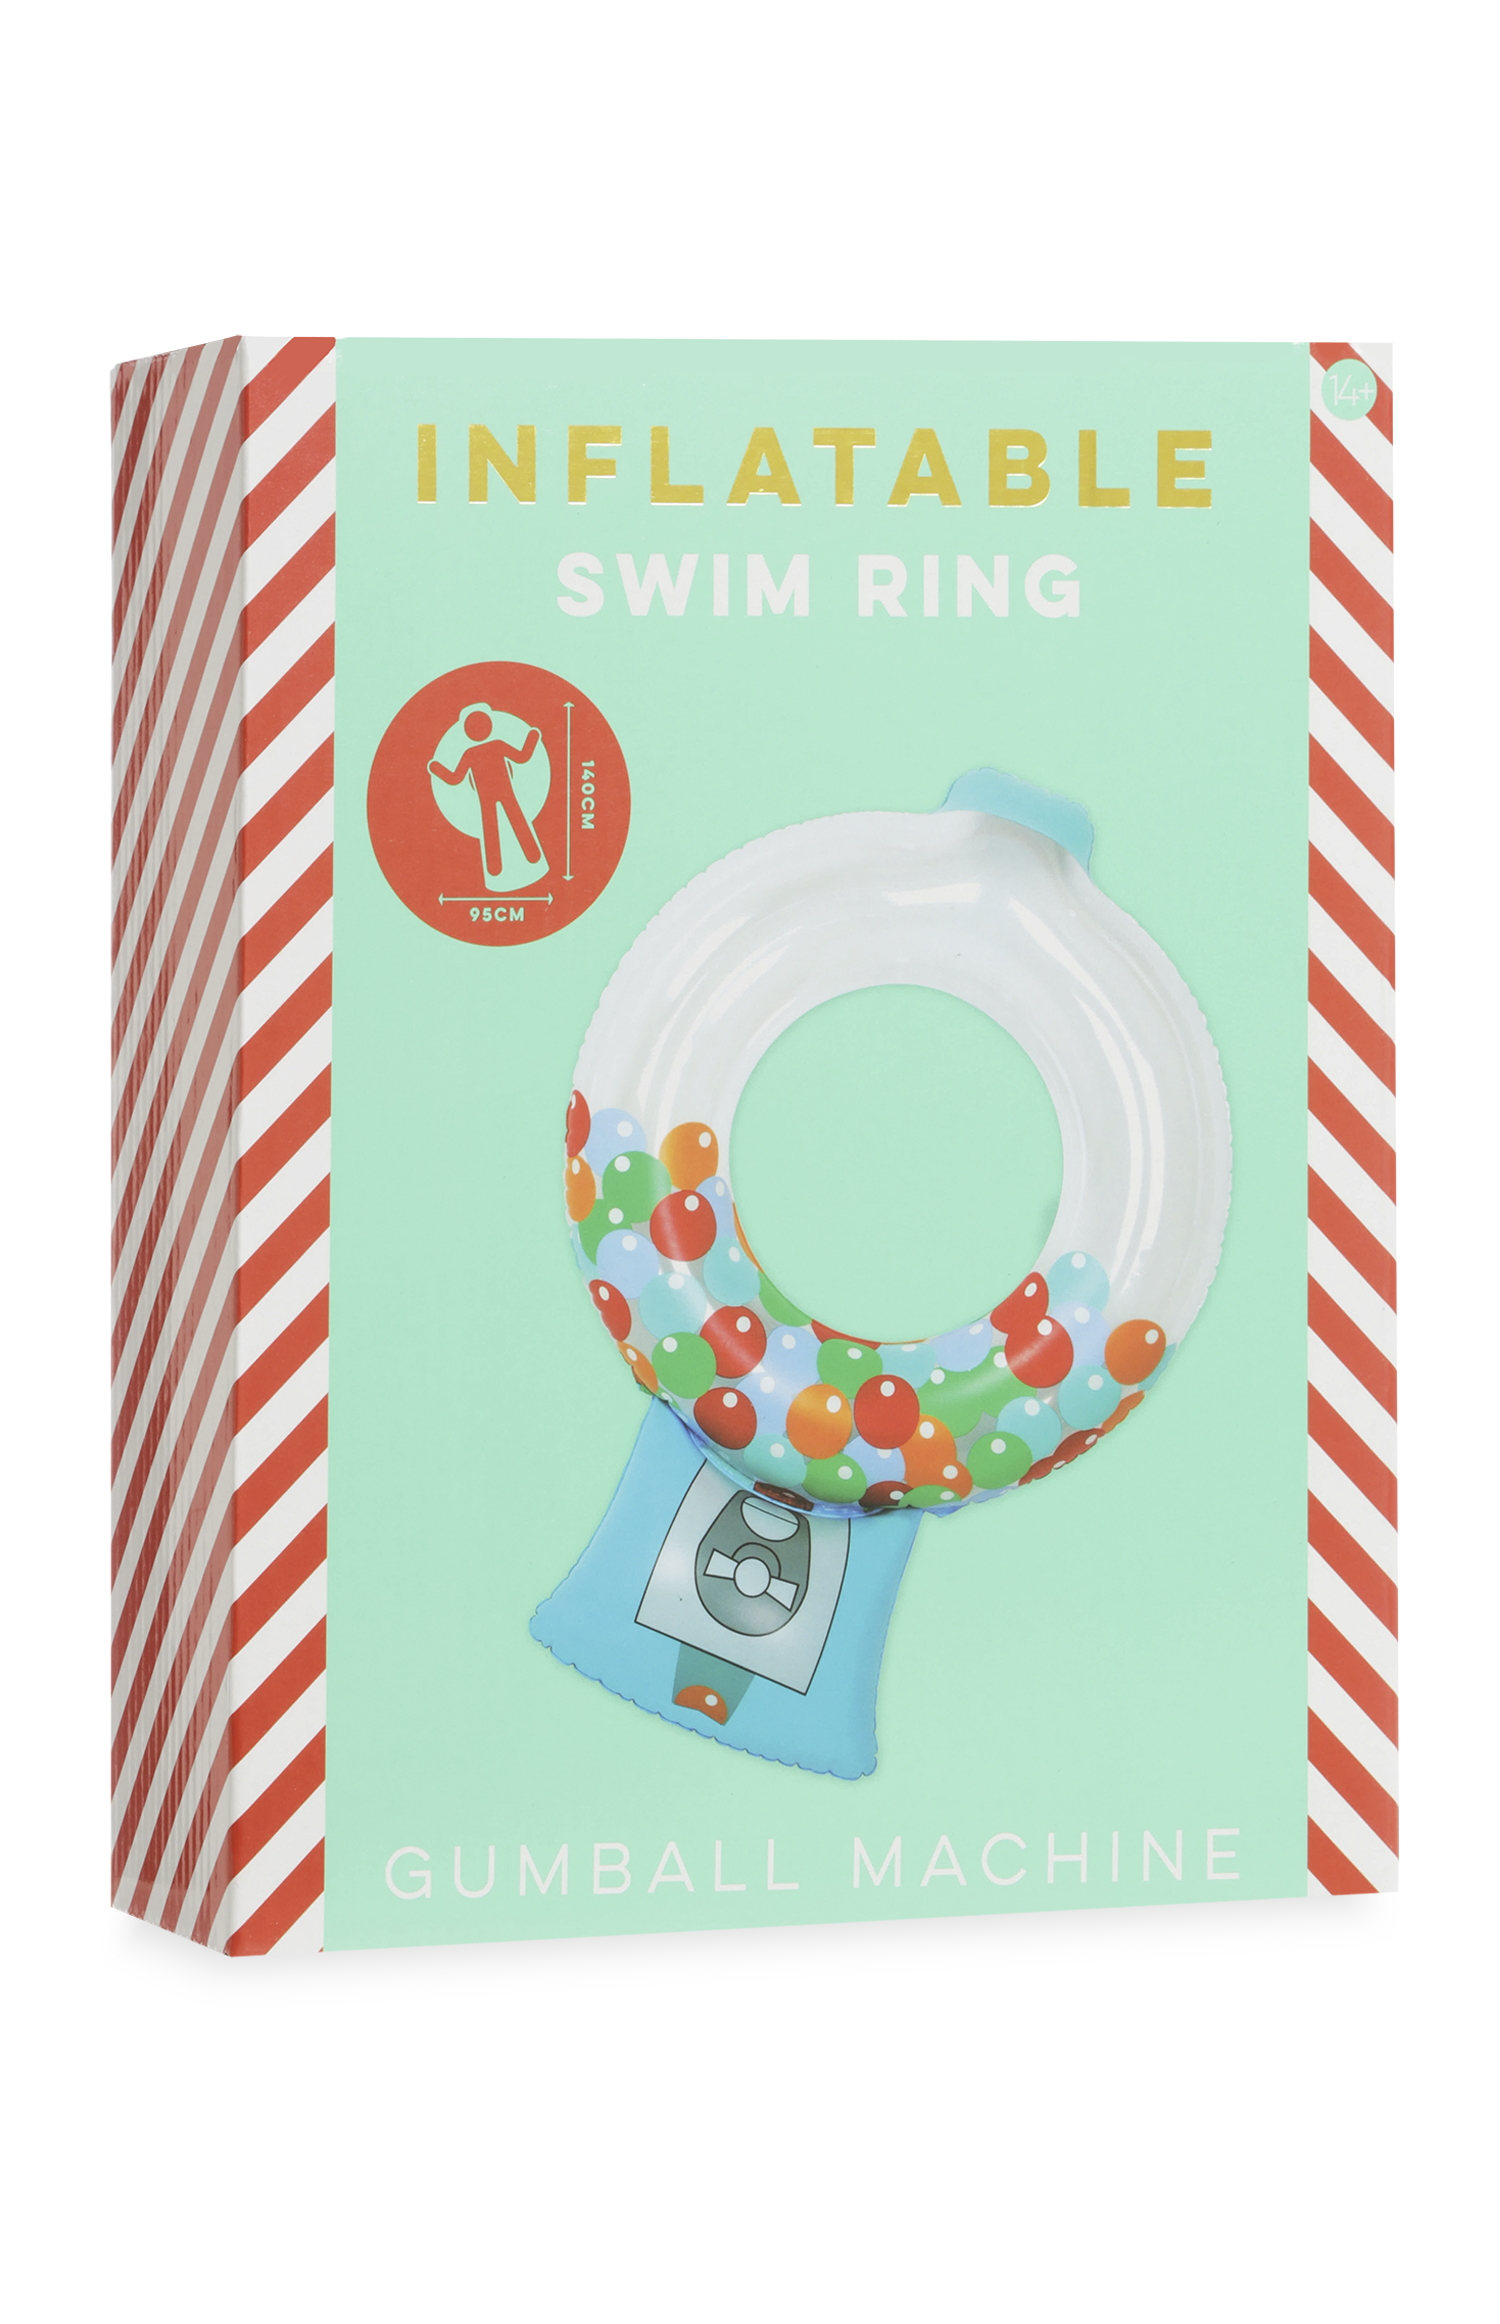 Kimball-3285202-Gumball Machine-Wk24-Grade G,J,G,j- €9,£7,$9,jpg